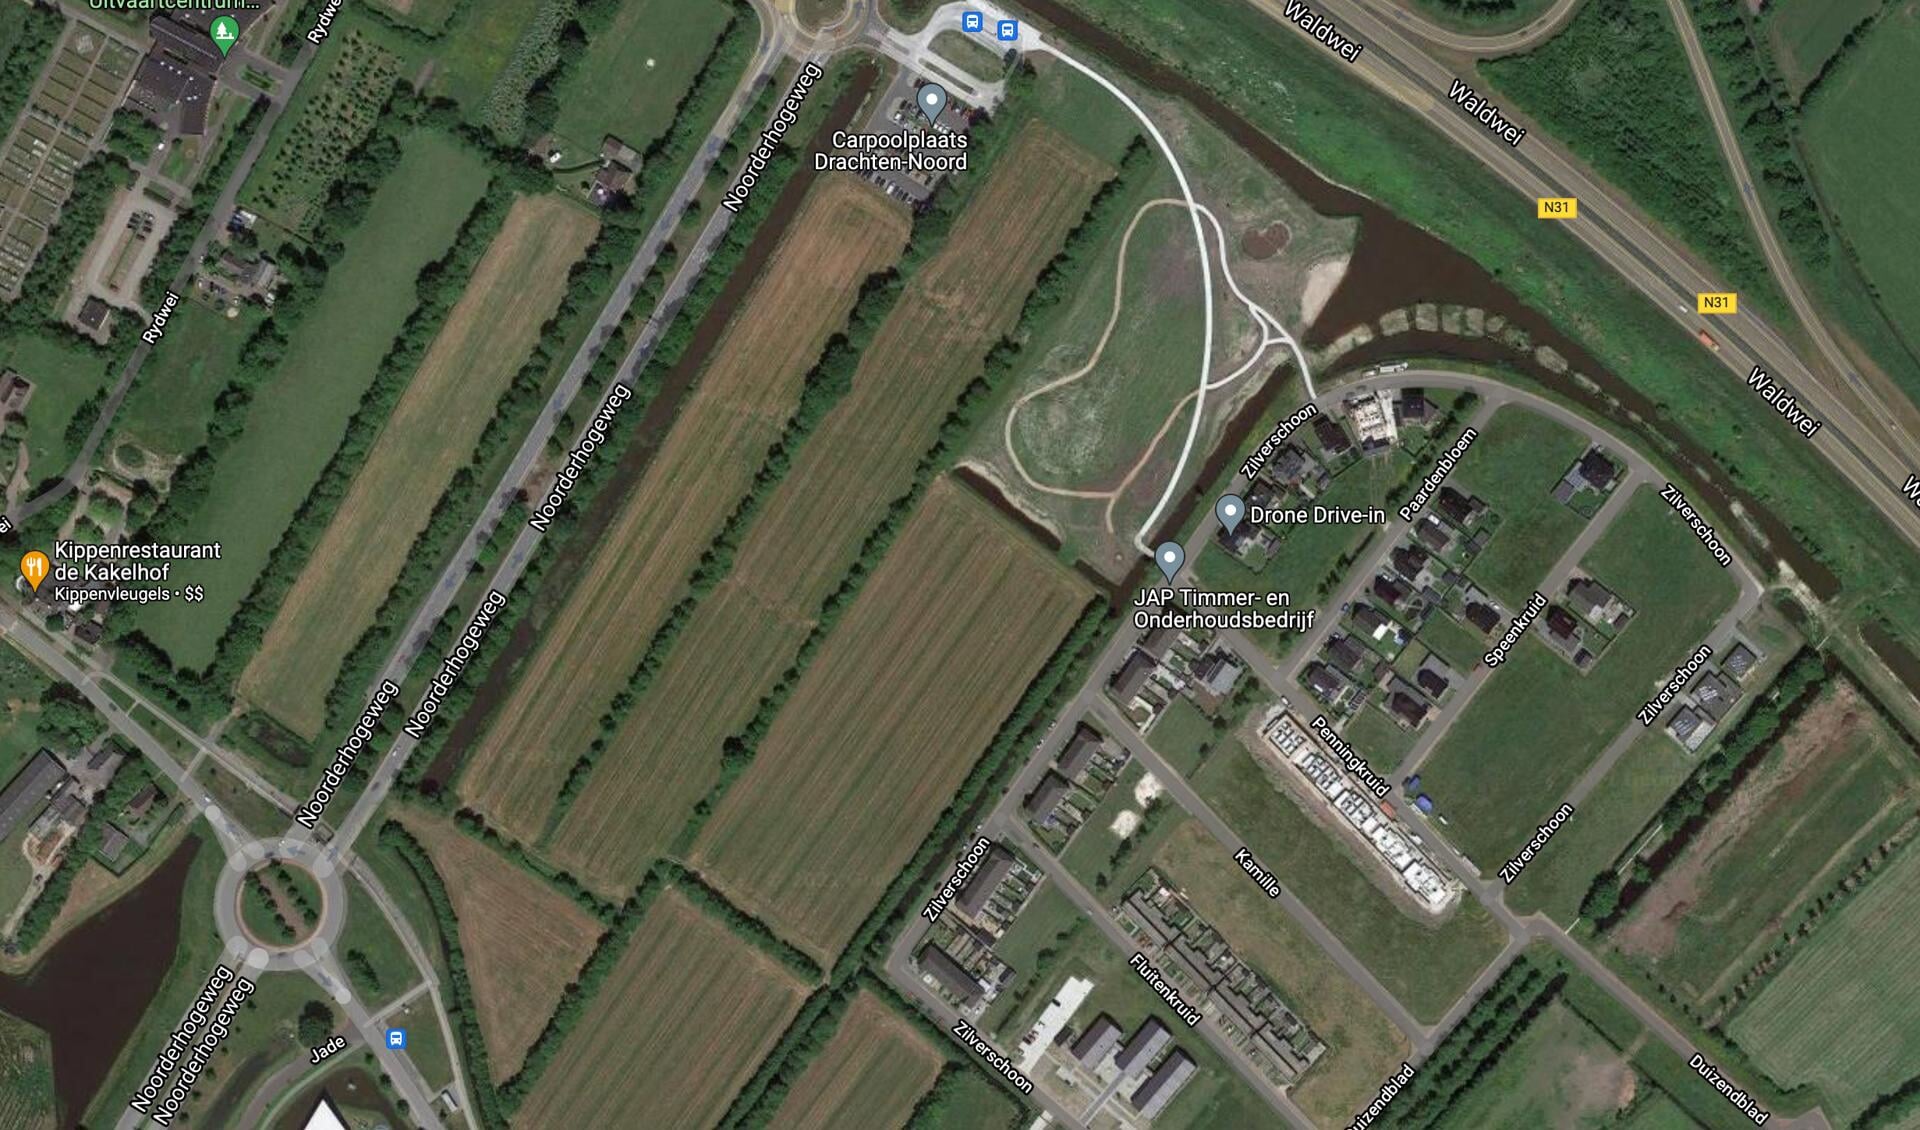 Satellietfoto van het te bebouwen gebied in het noordelijk deel van Drachten, zuidelijk van de Wâldwei.